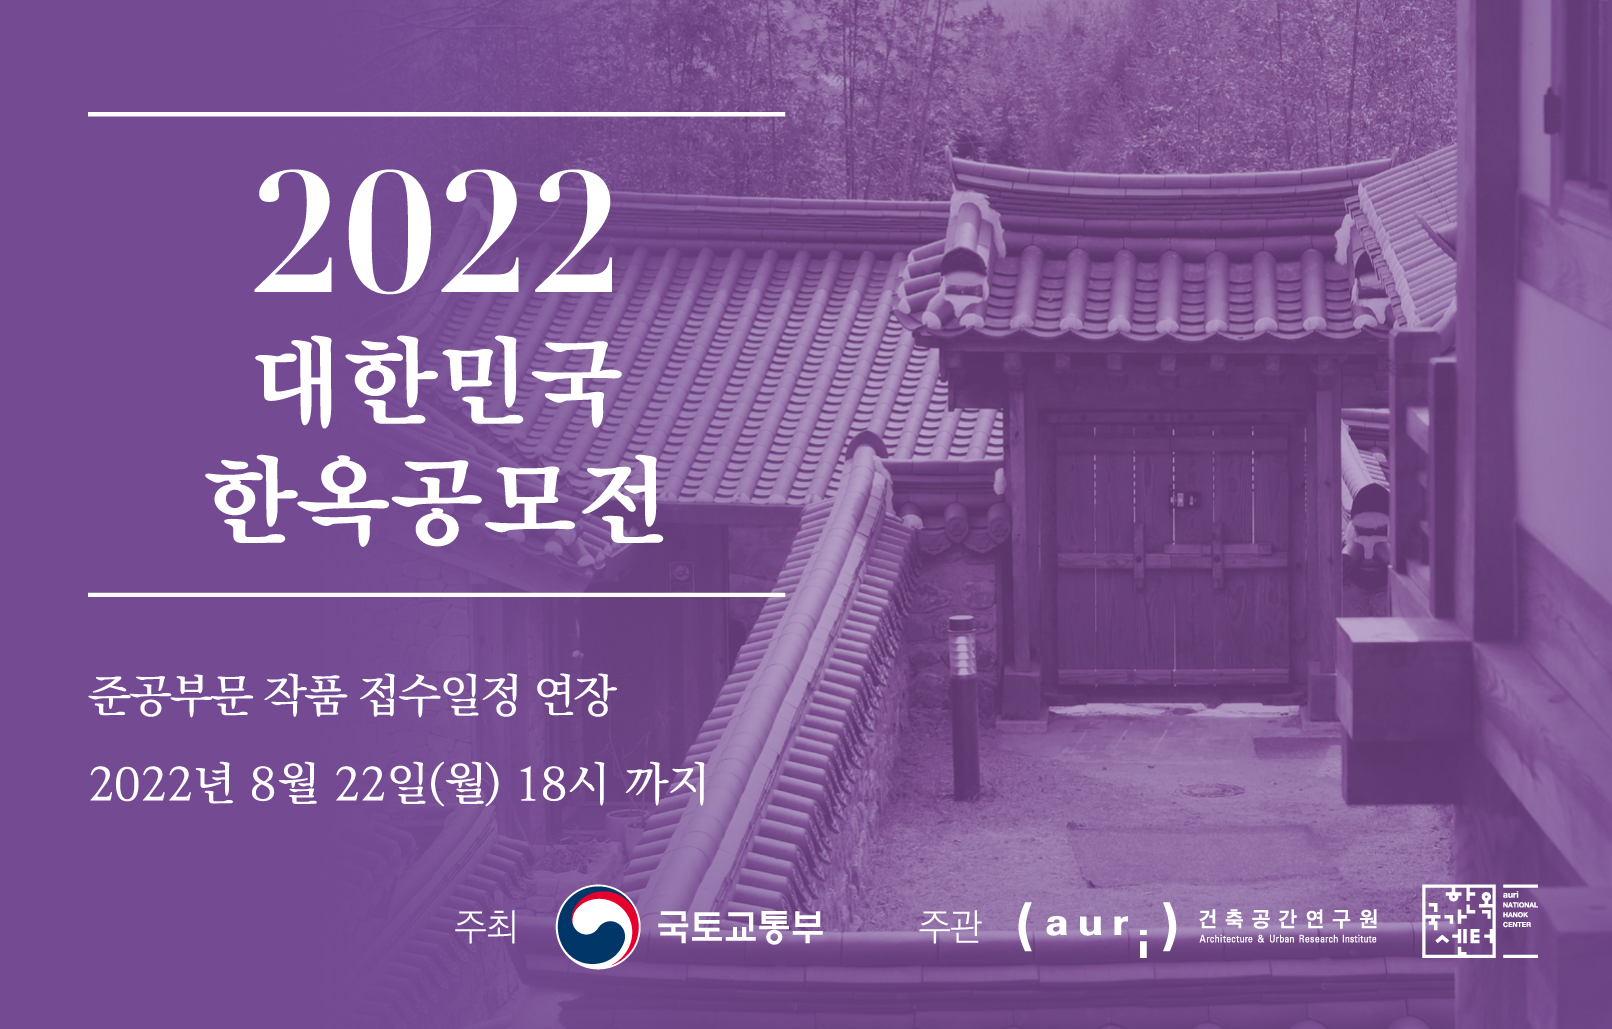 2022 대한민국 한옥공모전 준공부문 작품 접수일정 연장2022년 8월 22일(월) 18시까지